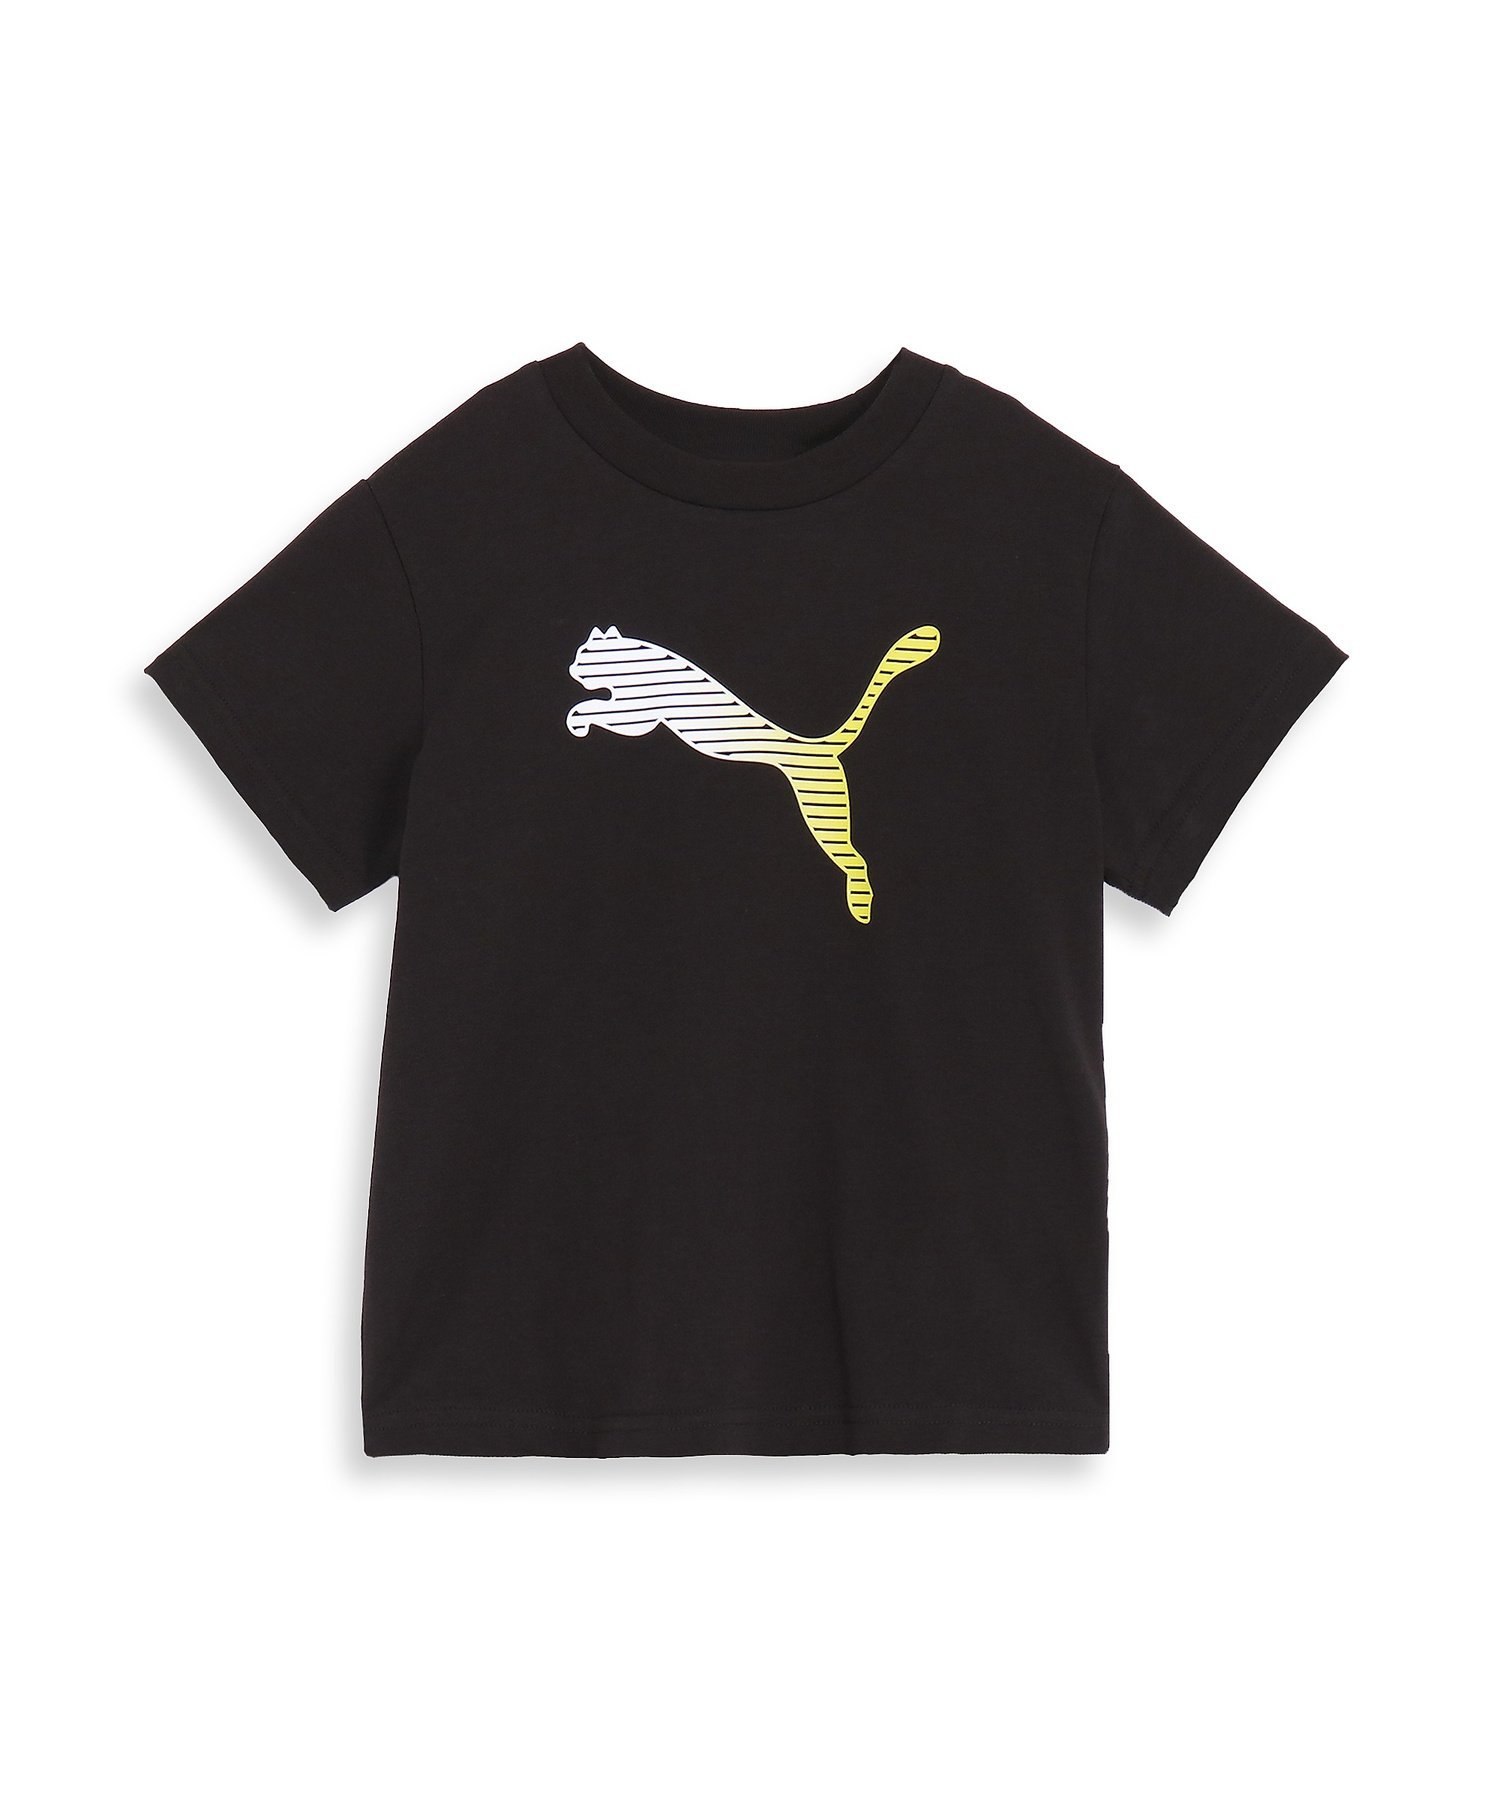 楽天Rakuten FashionPUMA キッズ ボーイズ ESSプラス MX NO1 ロゴ リラックス 半袖 Tシャツ 120-160cm プーマ トップス カットソー・Tシャツ ブラック